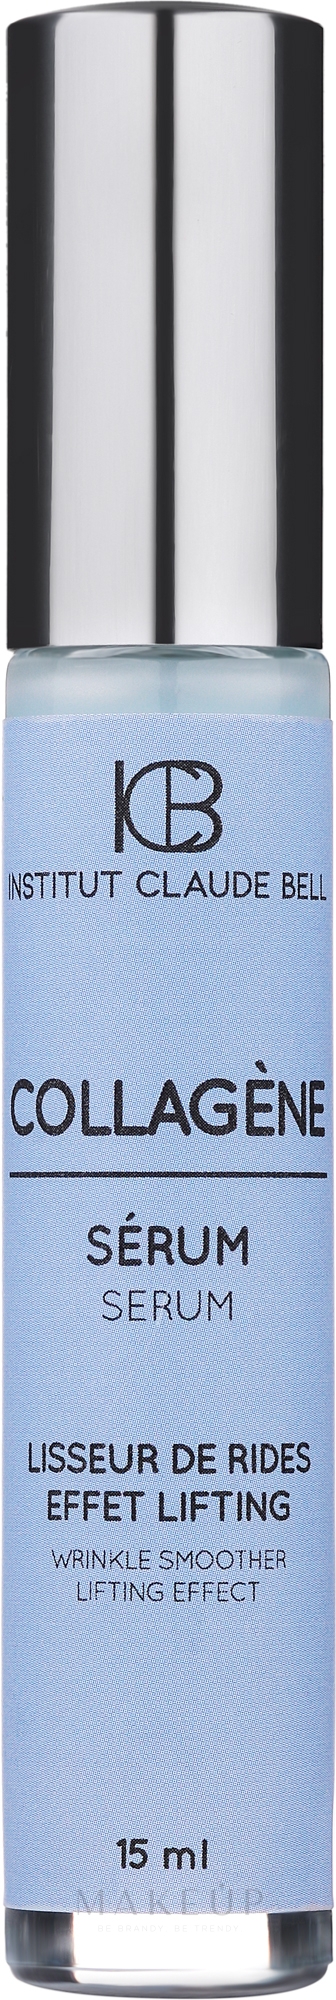 Anti-Falten Gesichtsserum mit Kollagen gegen Pigmentflecken - Institut Claude Bell Collagen Serum — Bild 15 ml